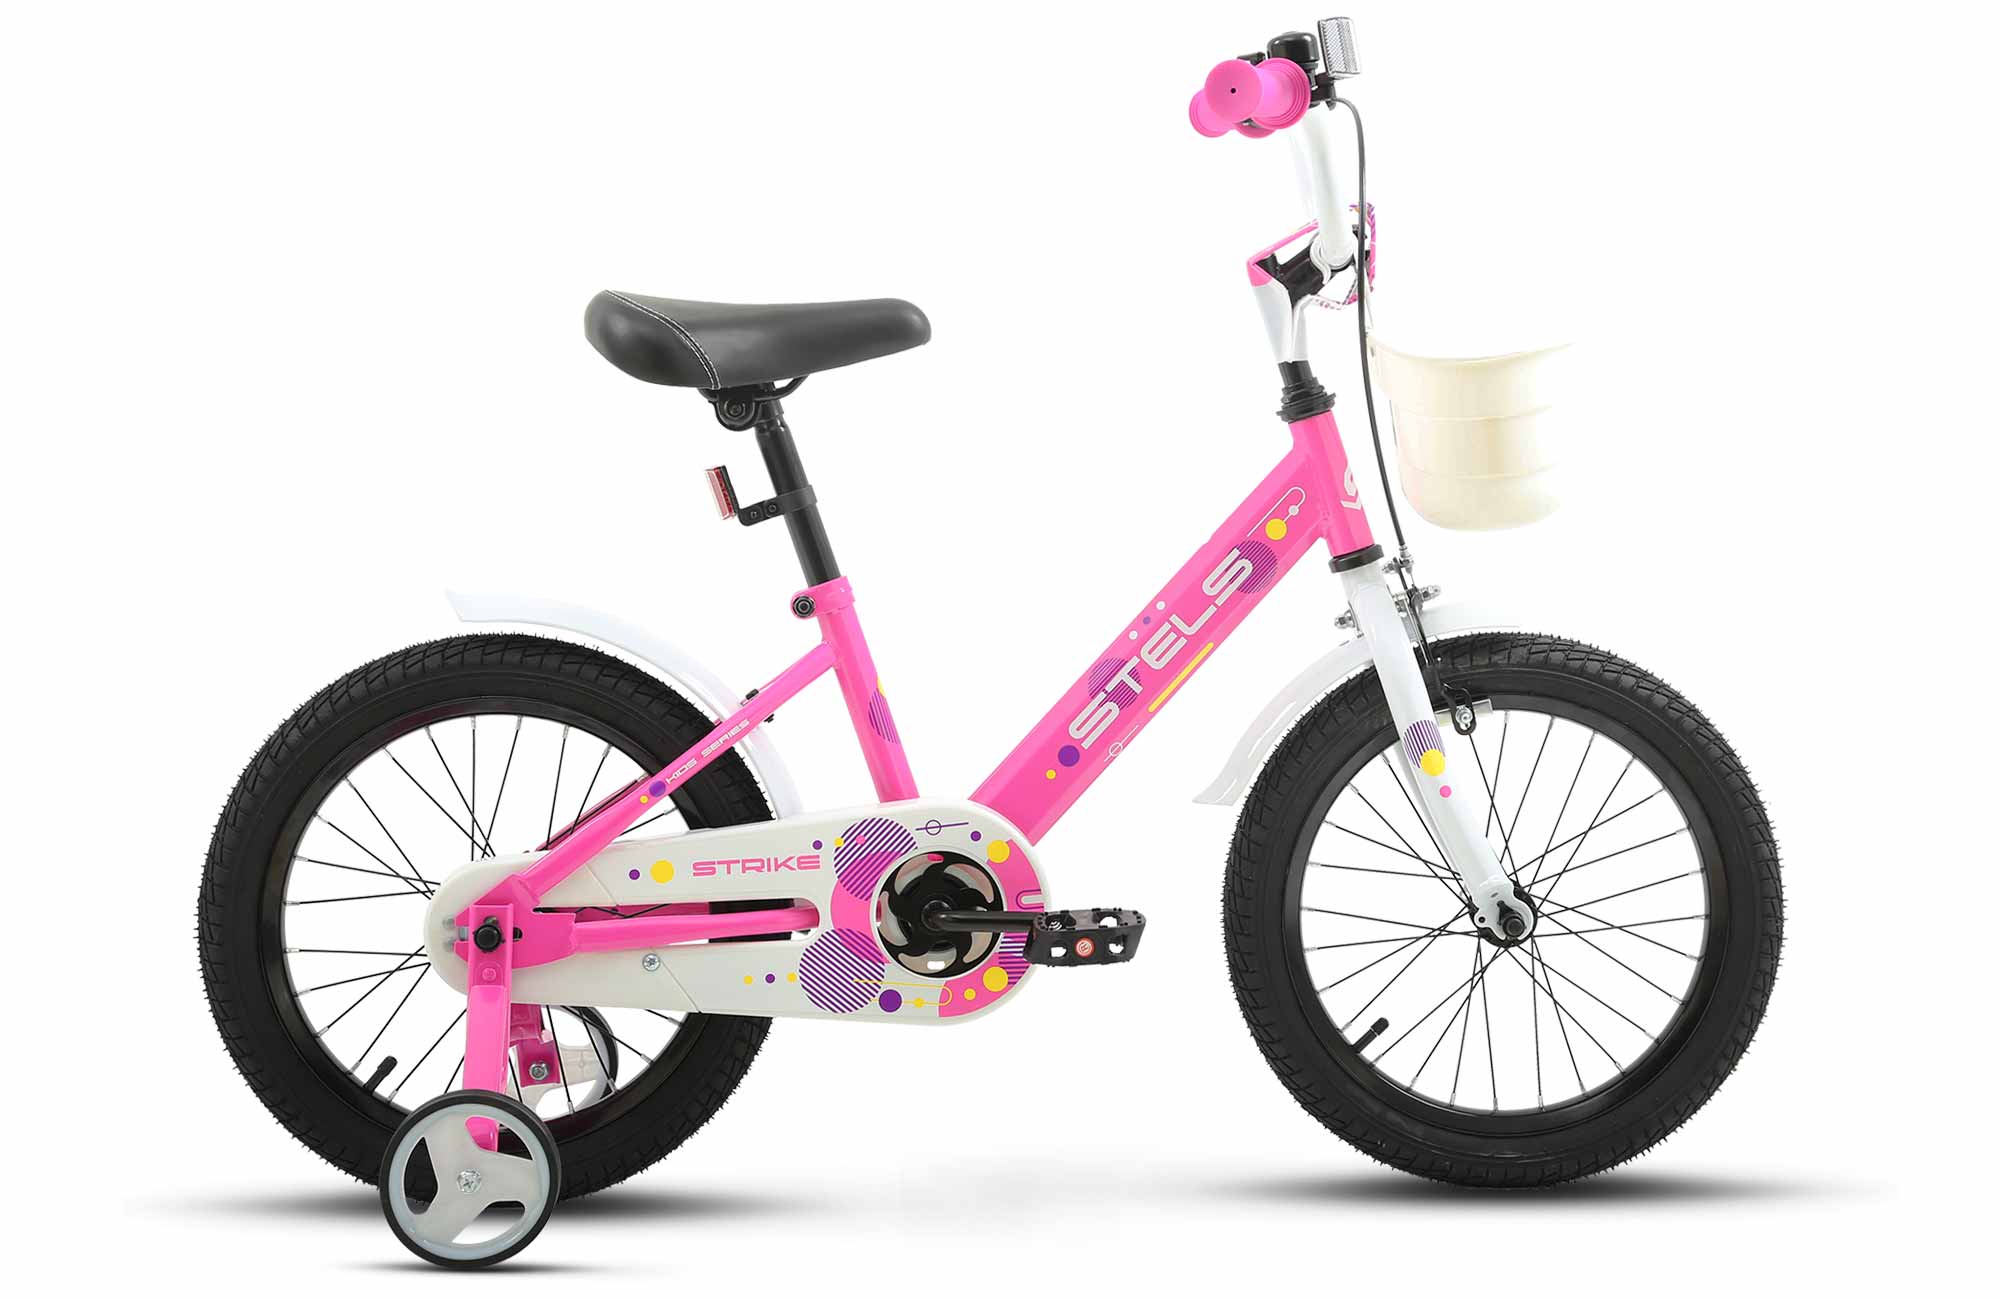 Детский велосипед STELS Strike VC 16 Z010 9.6 Розовый, с дополнительными колесами велосипед детский двухколесный stels 16 jet z010